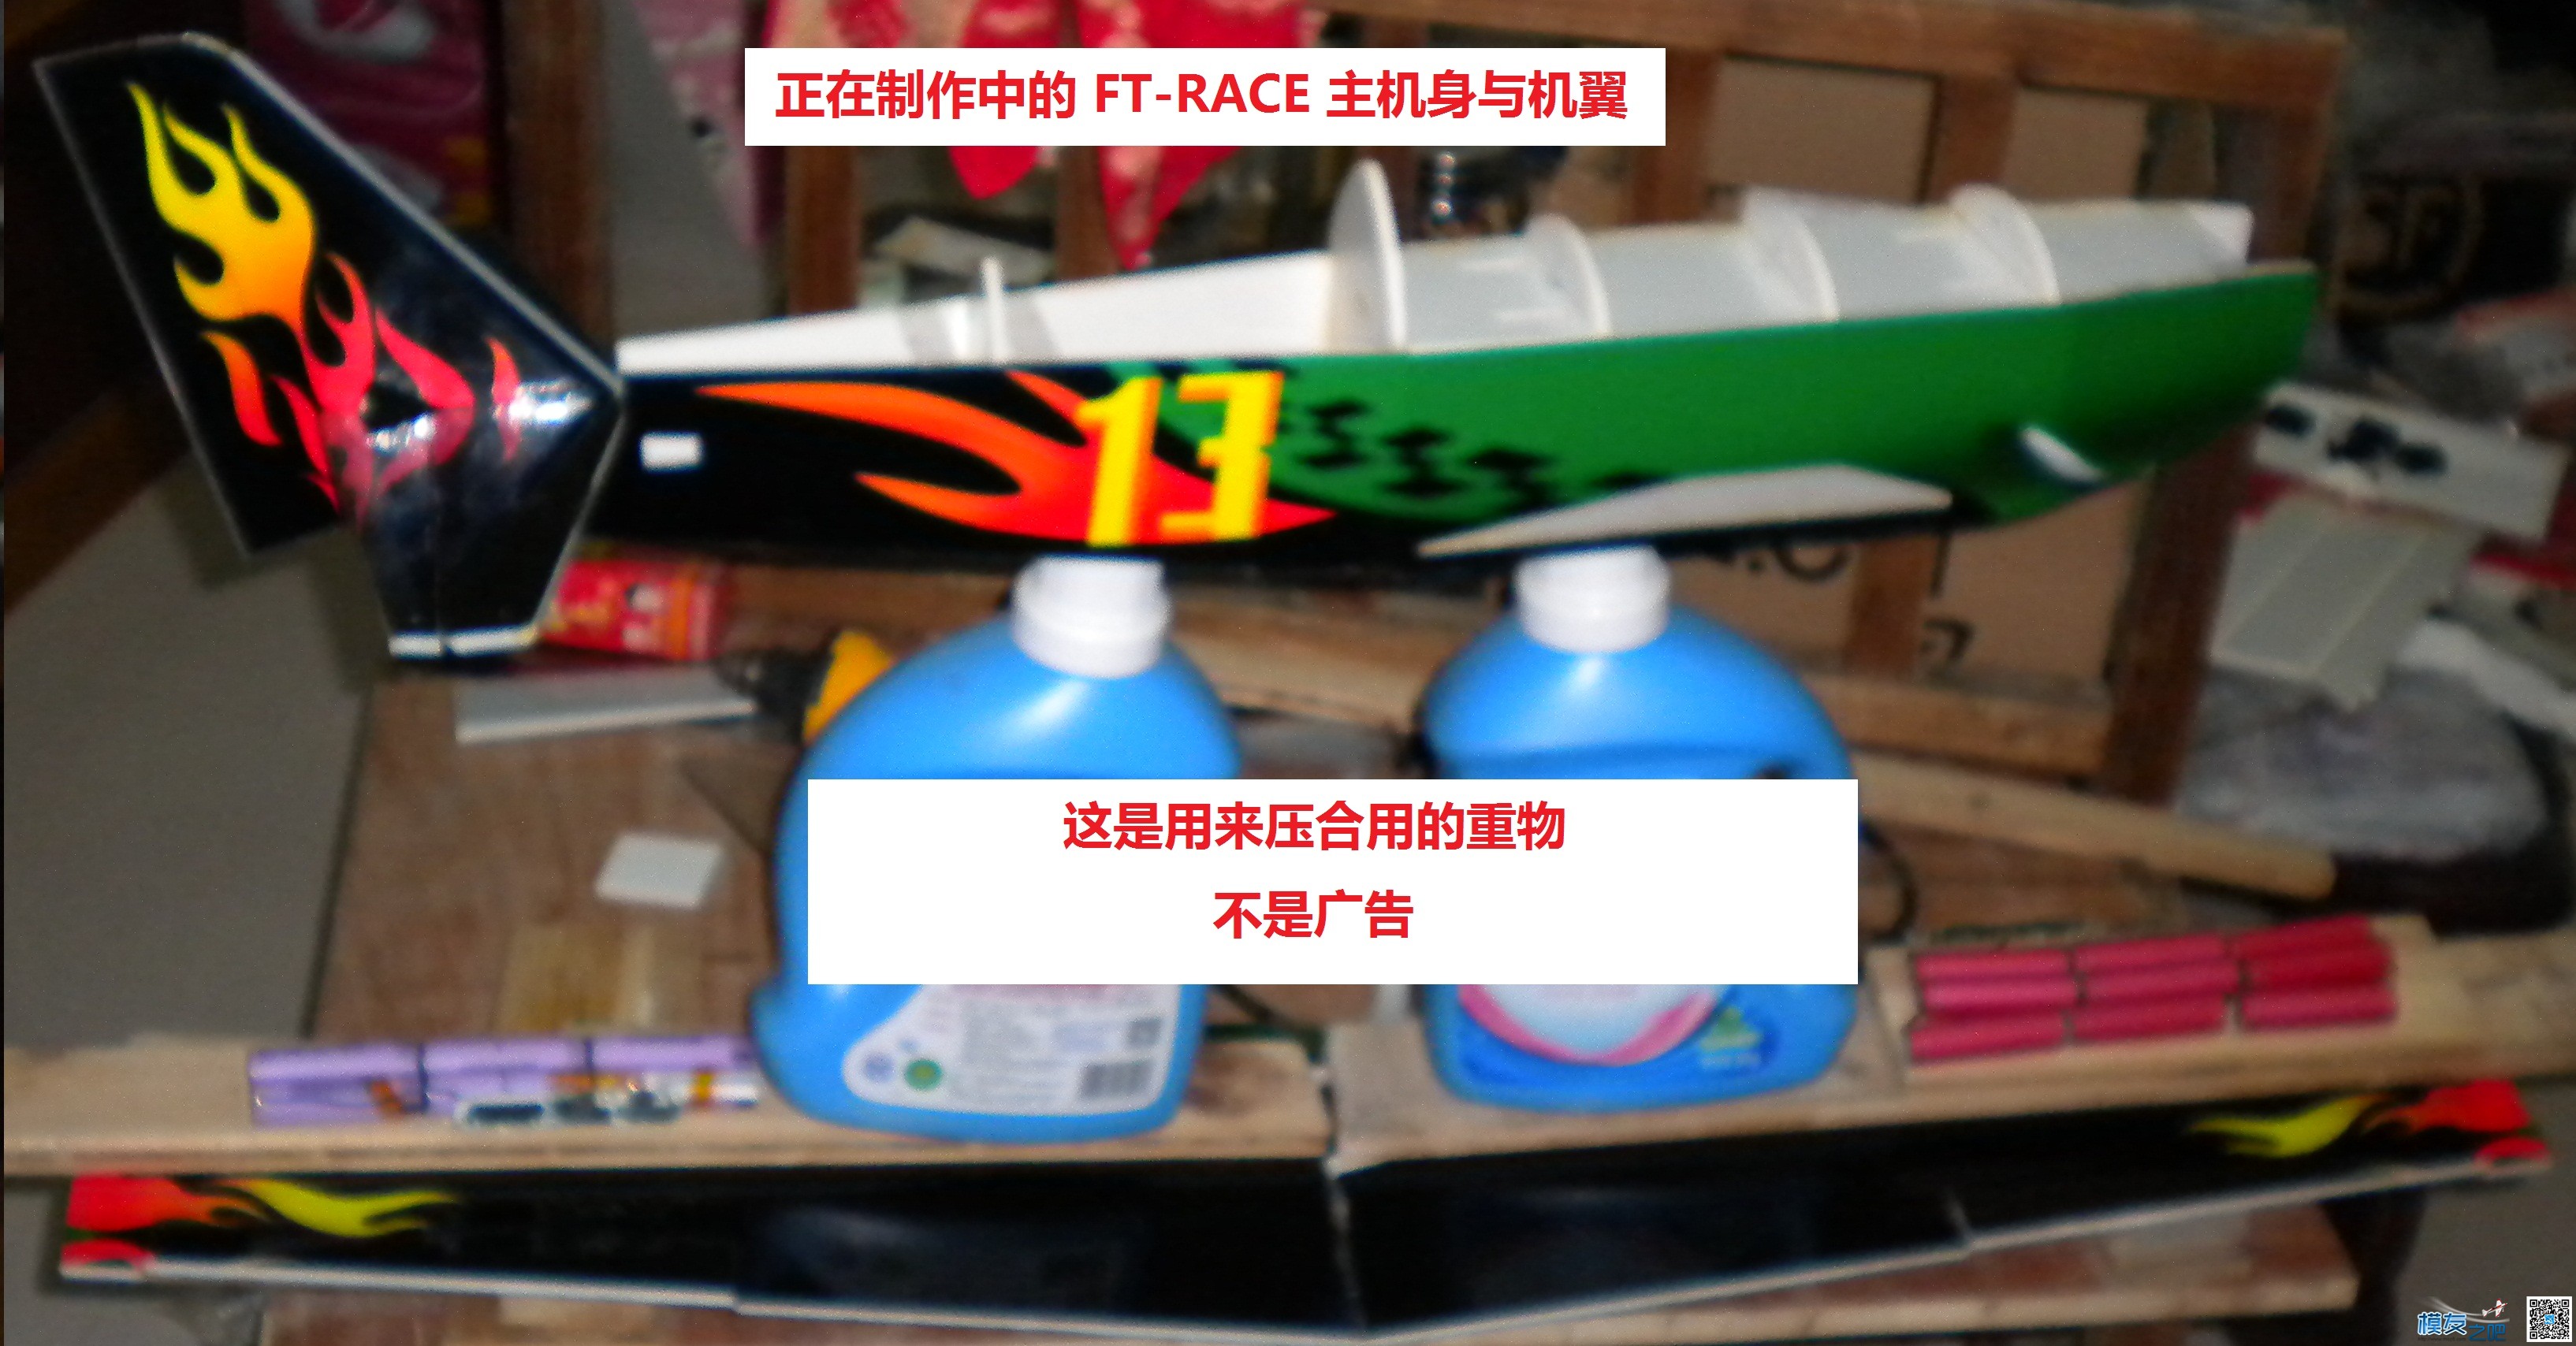 [我爱DIY]+背胶涂装FT-RACER机制作 电池,舵机,电调,电机,图纸 作者:Marshal 627 